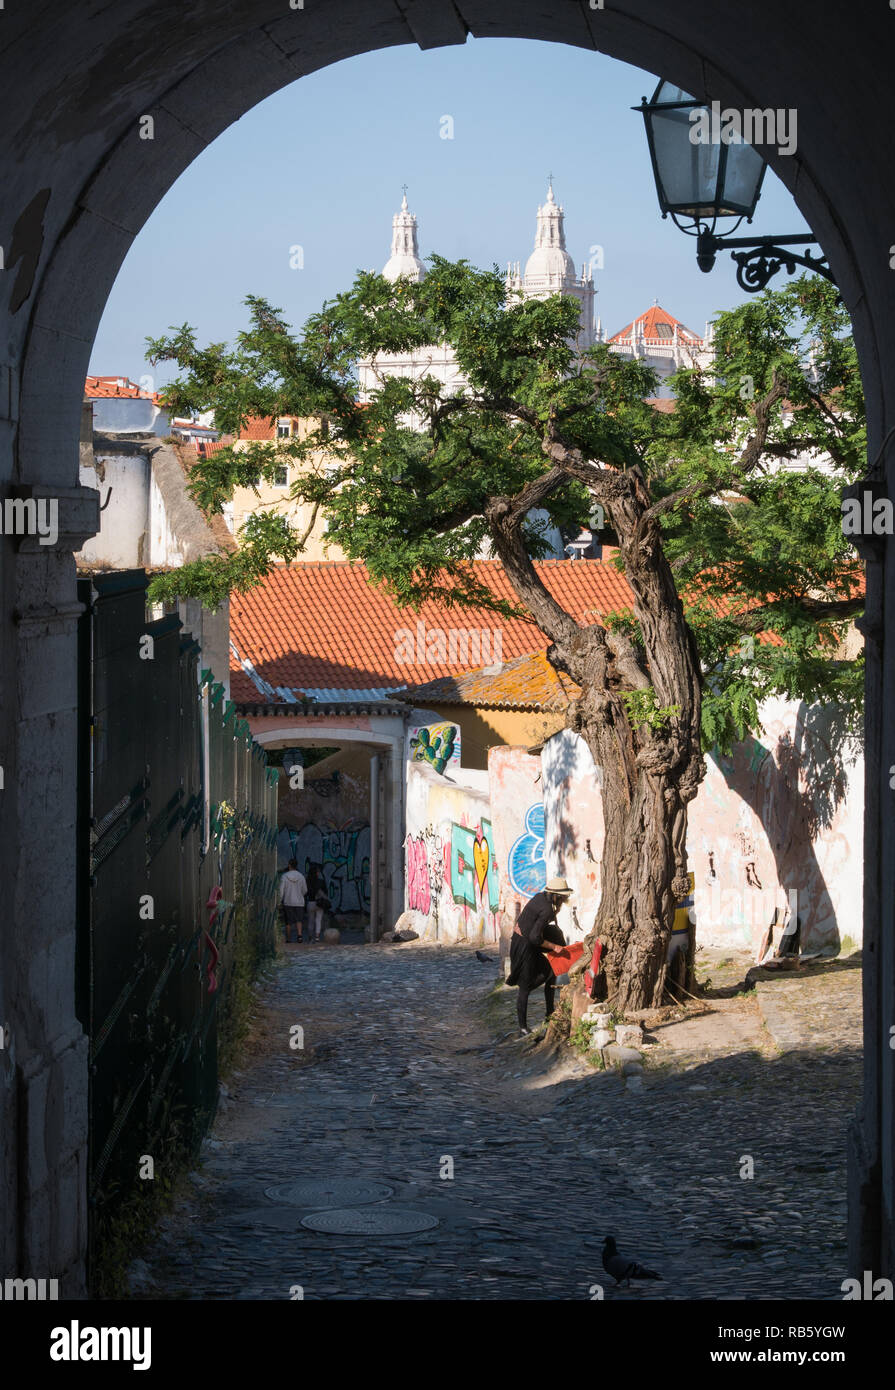 Lisbona, Portogallo - 27 Maggio 2018: l'artista di strada sotto un albero con San Vincenzo chiesa in background fotografata al di fuori del tunnel Foto Stock